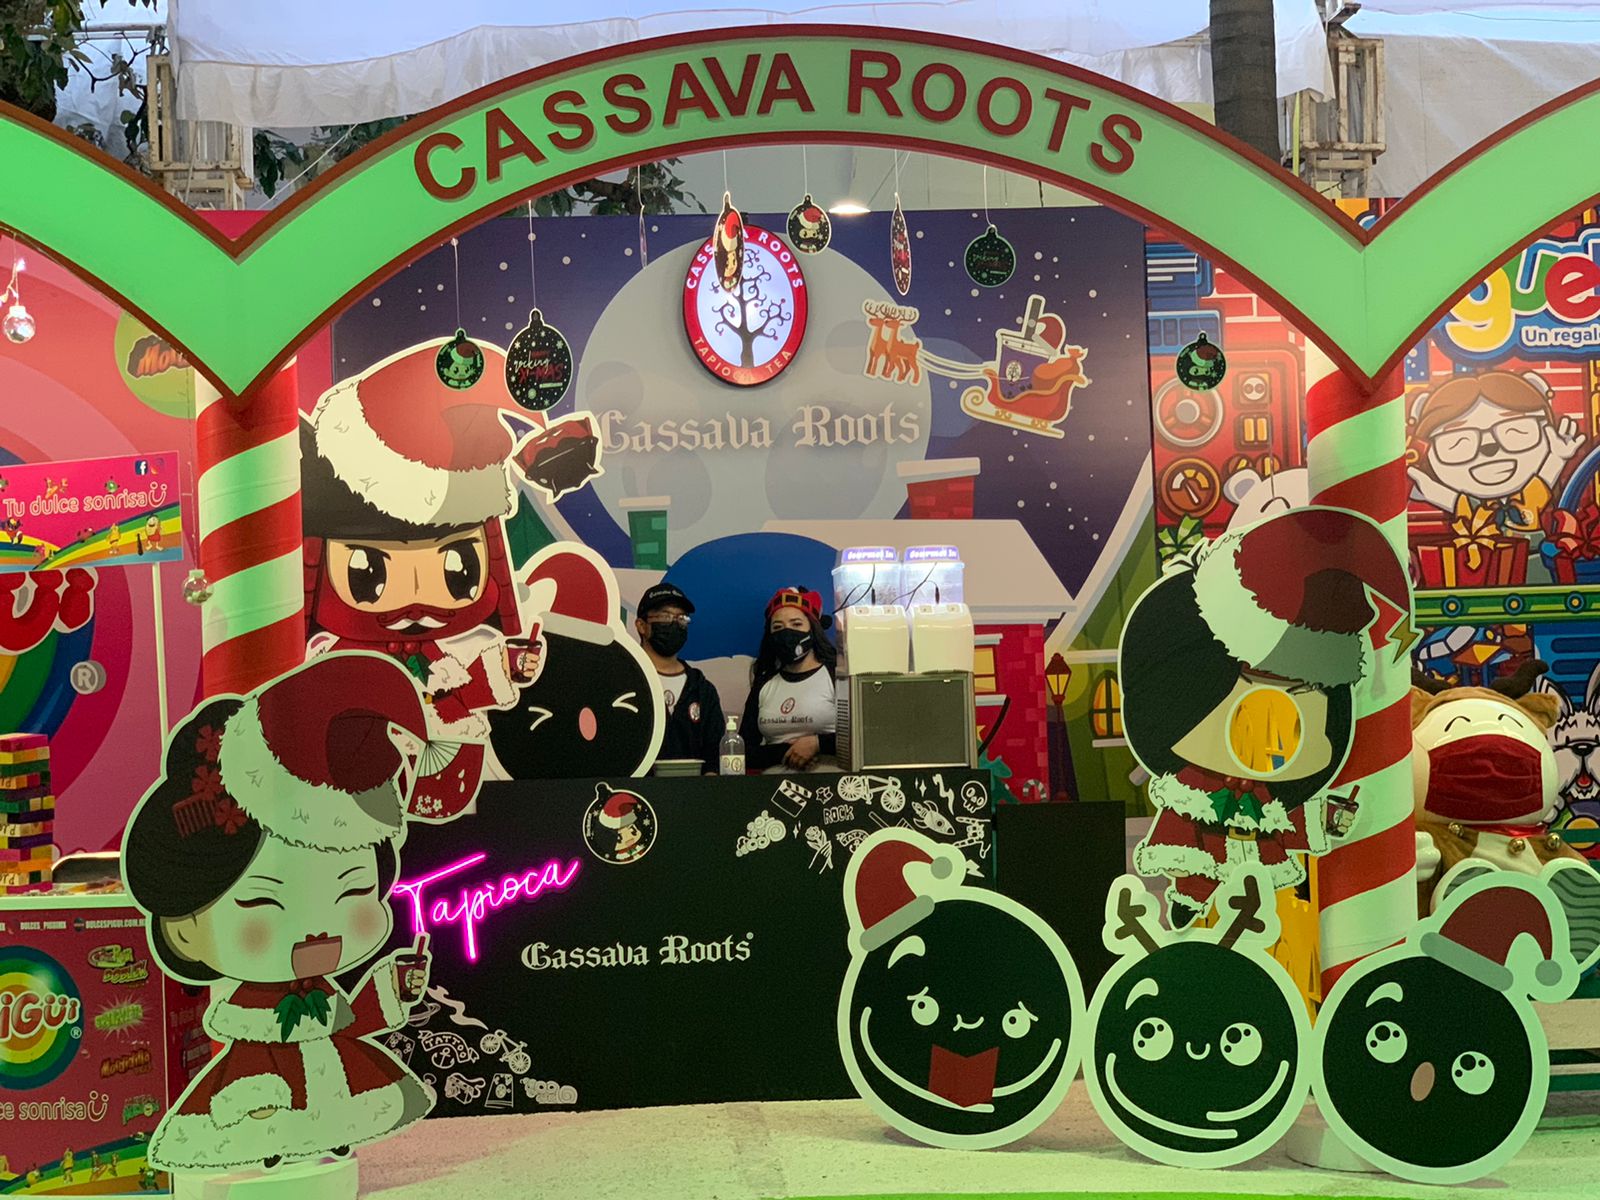 Continúa Cassava Roots su participación en Juguetón